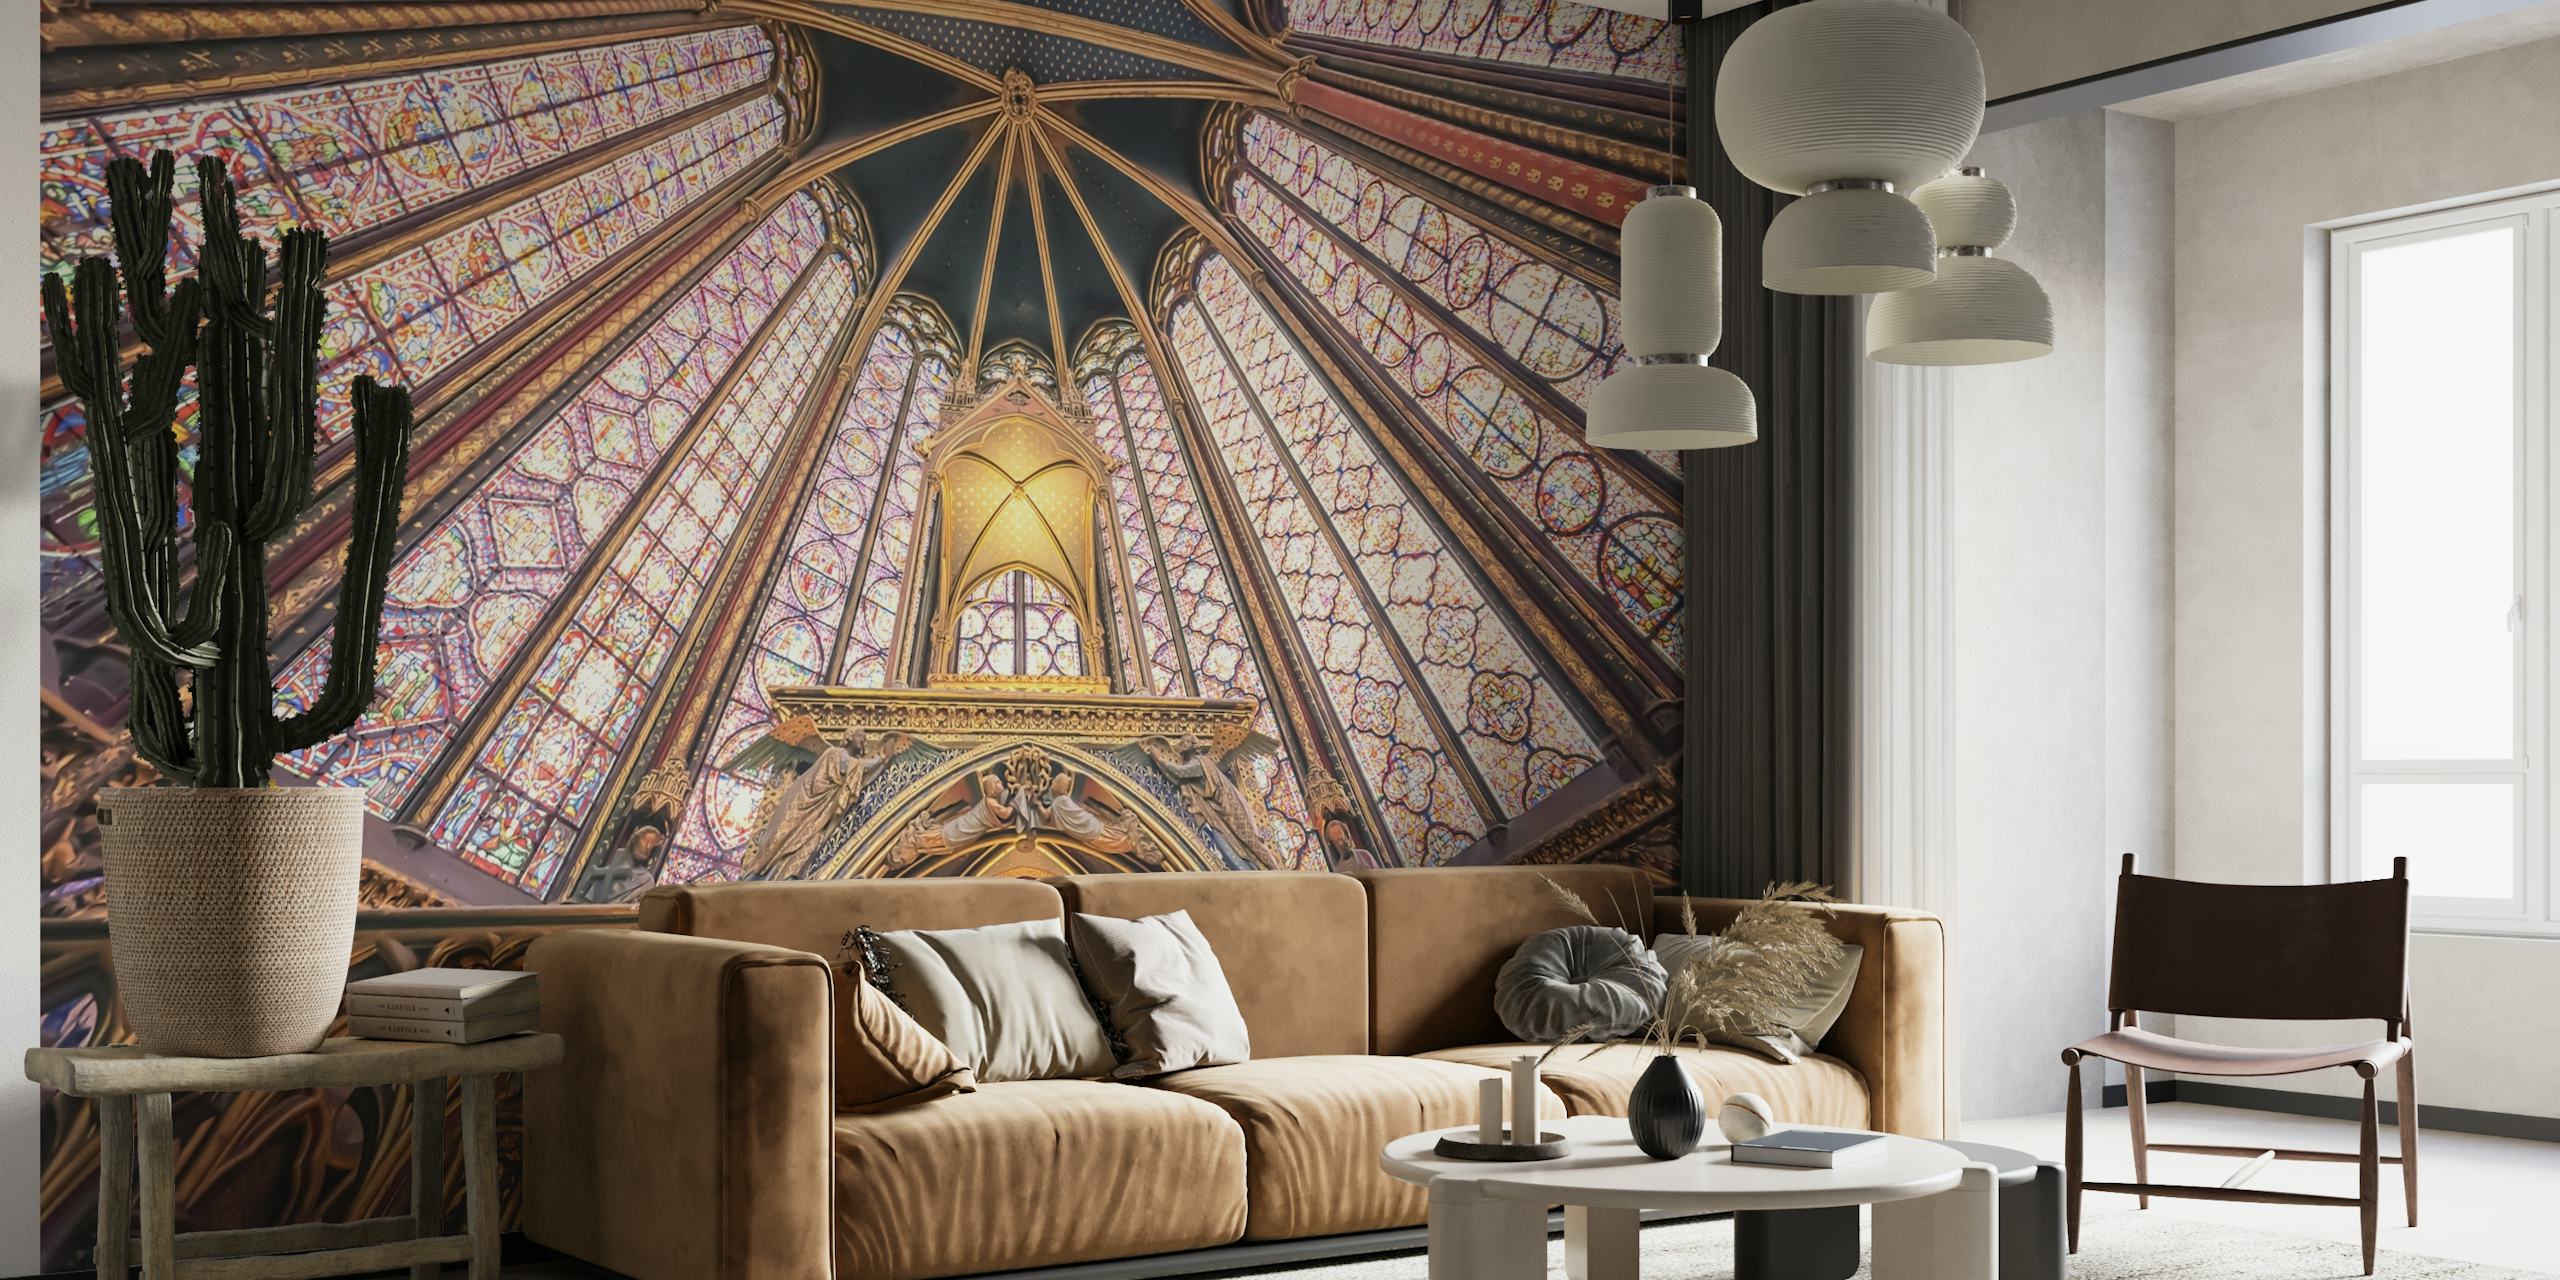 Nástěnná malba gotické architektury Sainte-Chapelle s živými vzory a odstíny ikonického stropu.